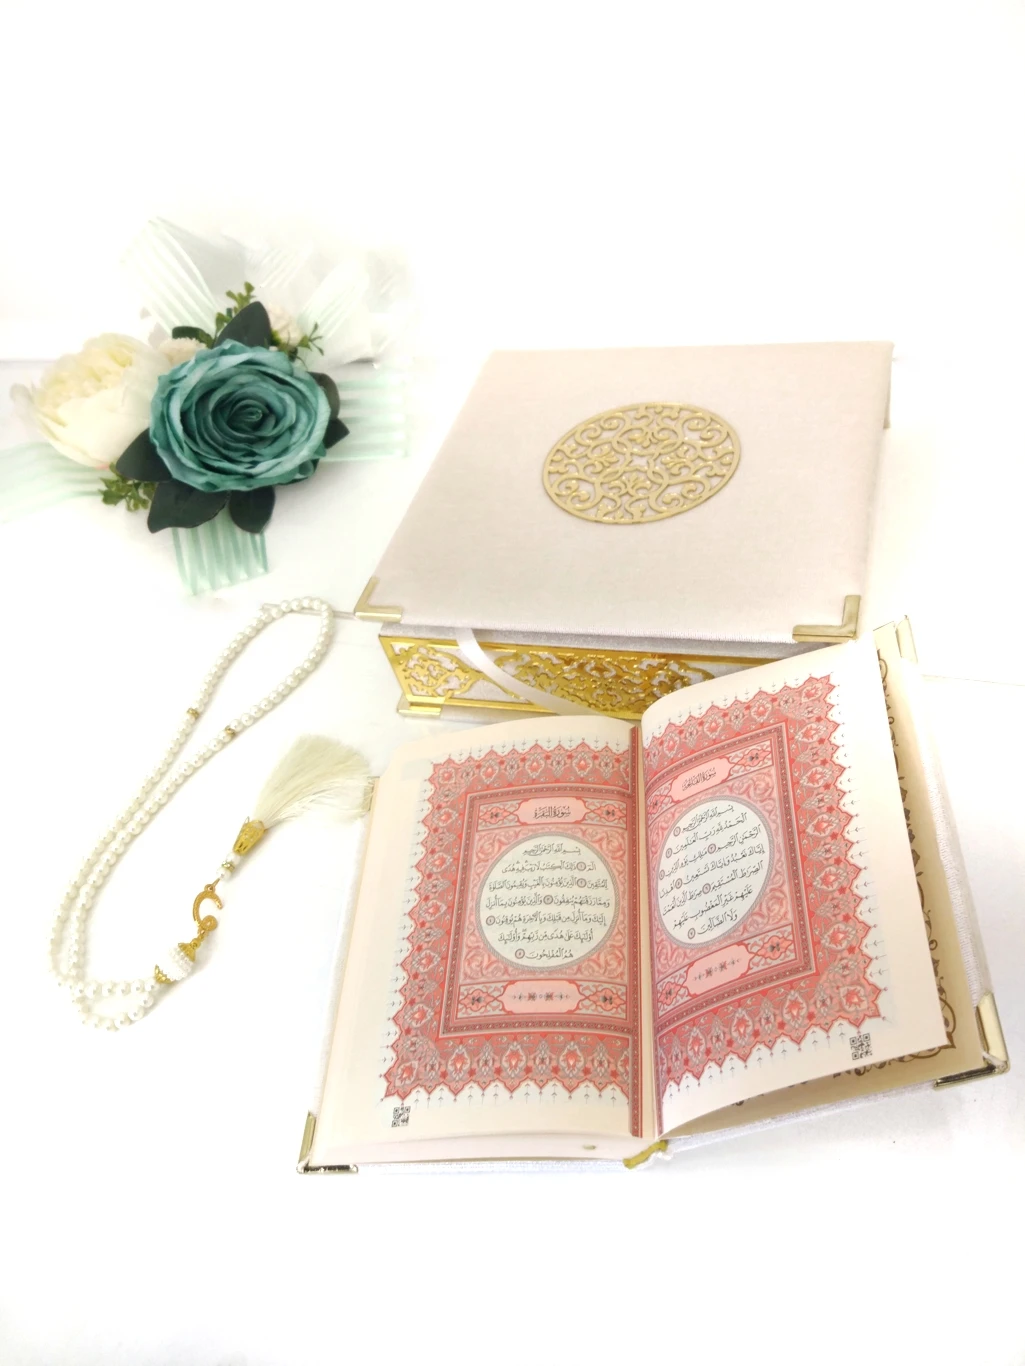 Мусульманский набор. Коробочка для мусульман. Набор для мусульманина подарочный. Коран в бархате. Мусульманские наборы в подарок женщине.